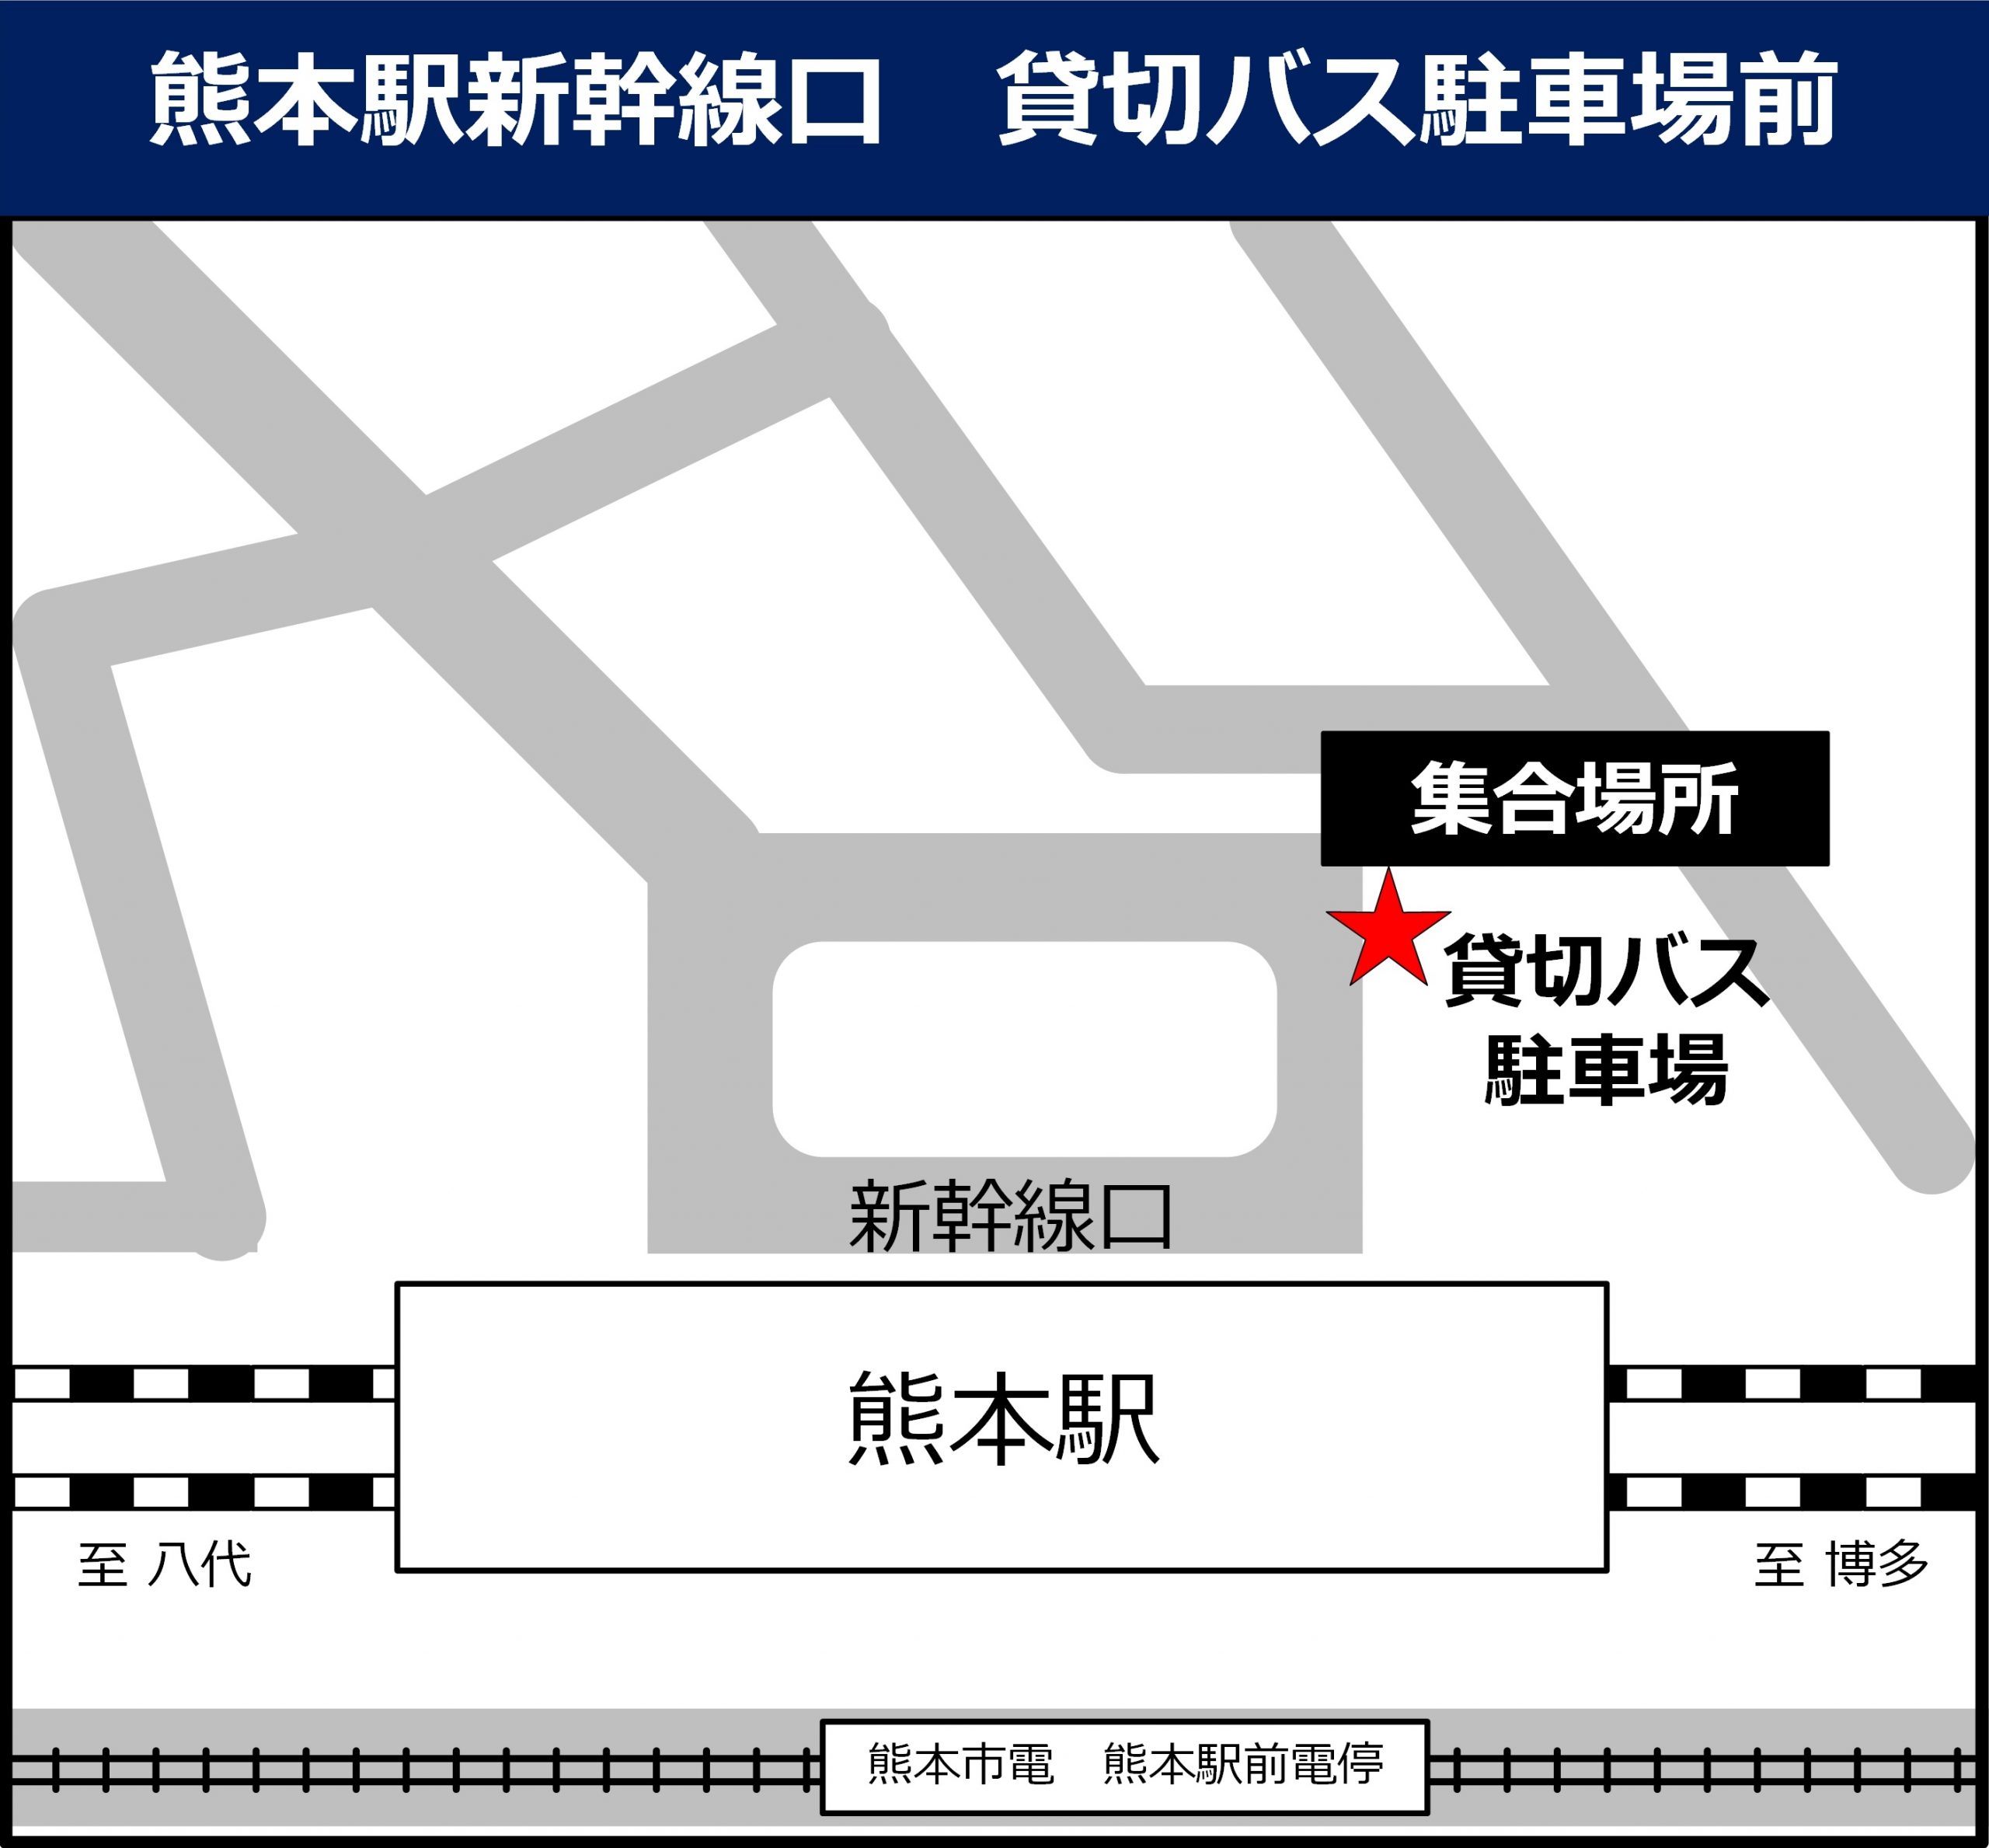 熊本駅新幹線口 貸切バス駐車場前の地図